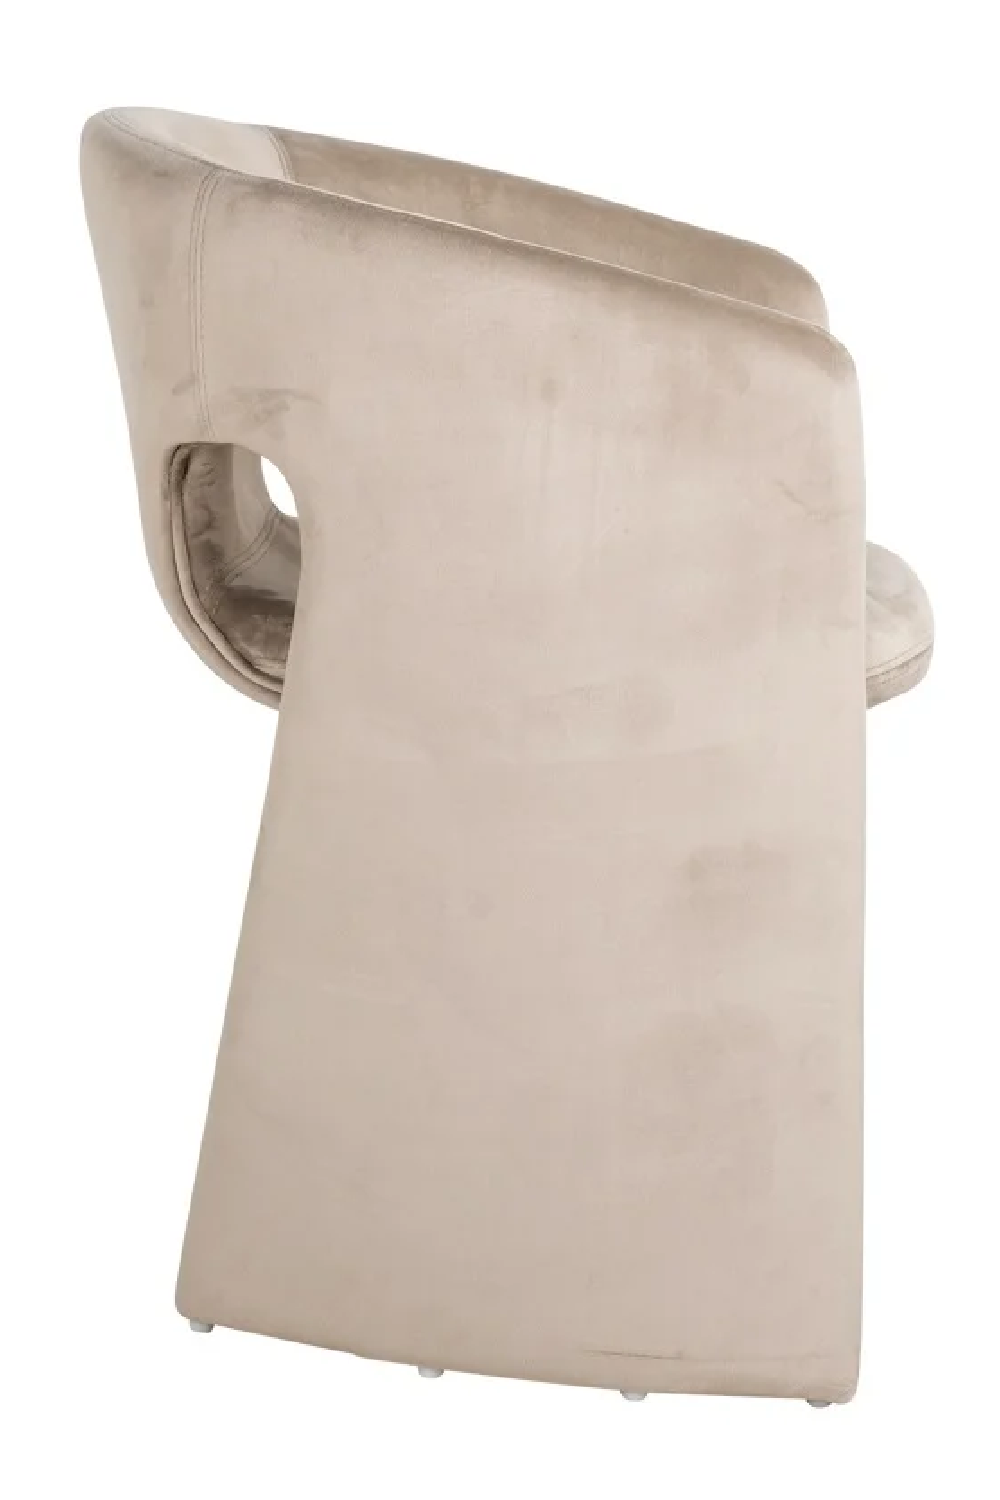 Modern Sculptural Dining Armchair | OROA Carlotta | Oroa.com